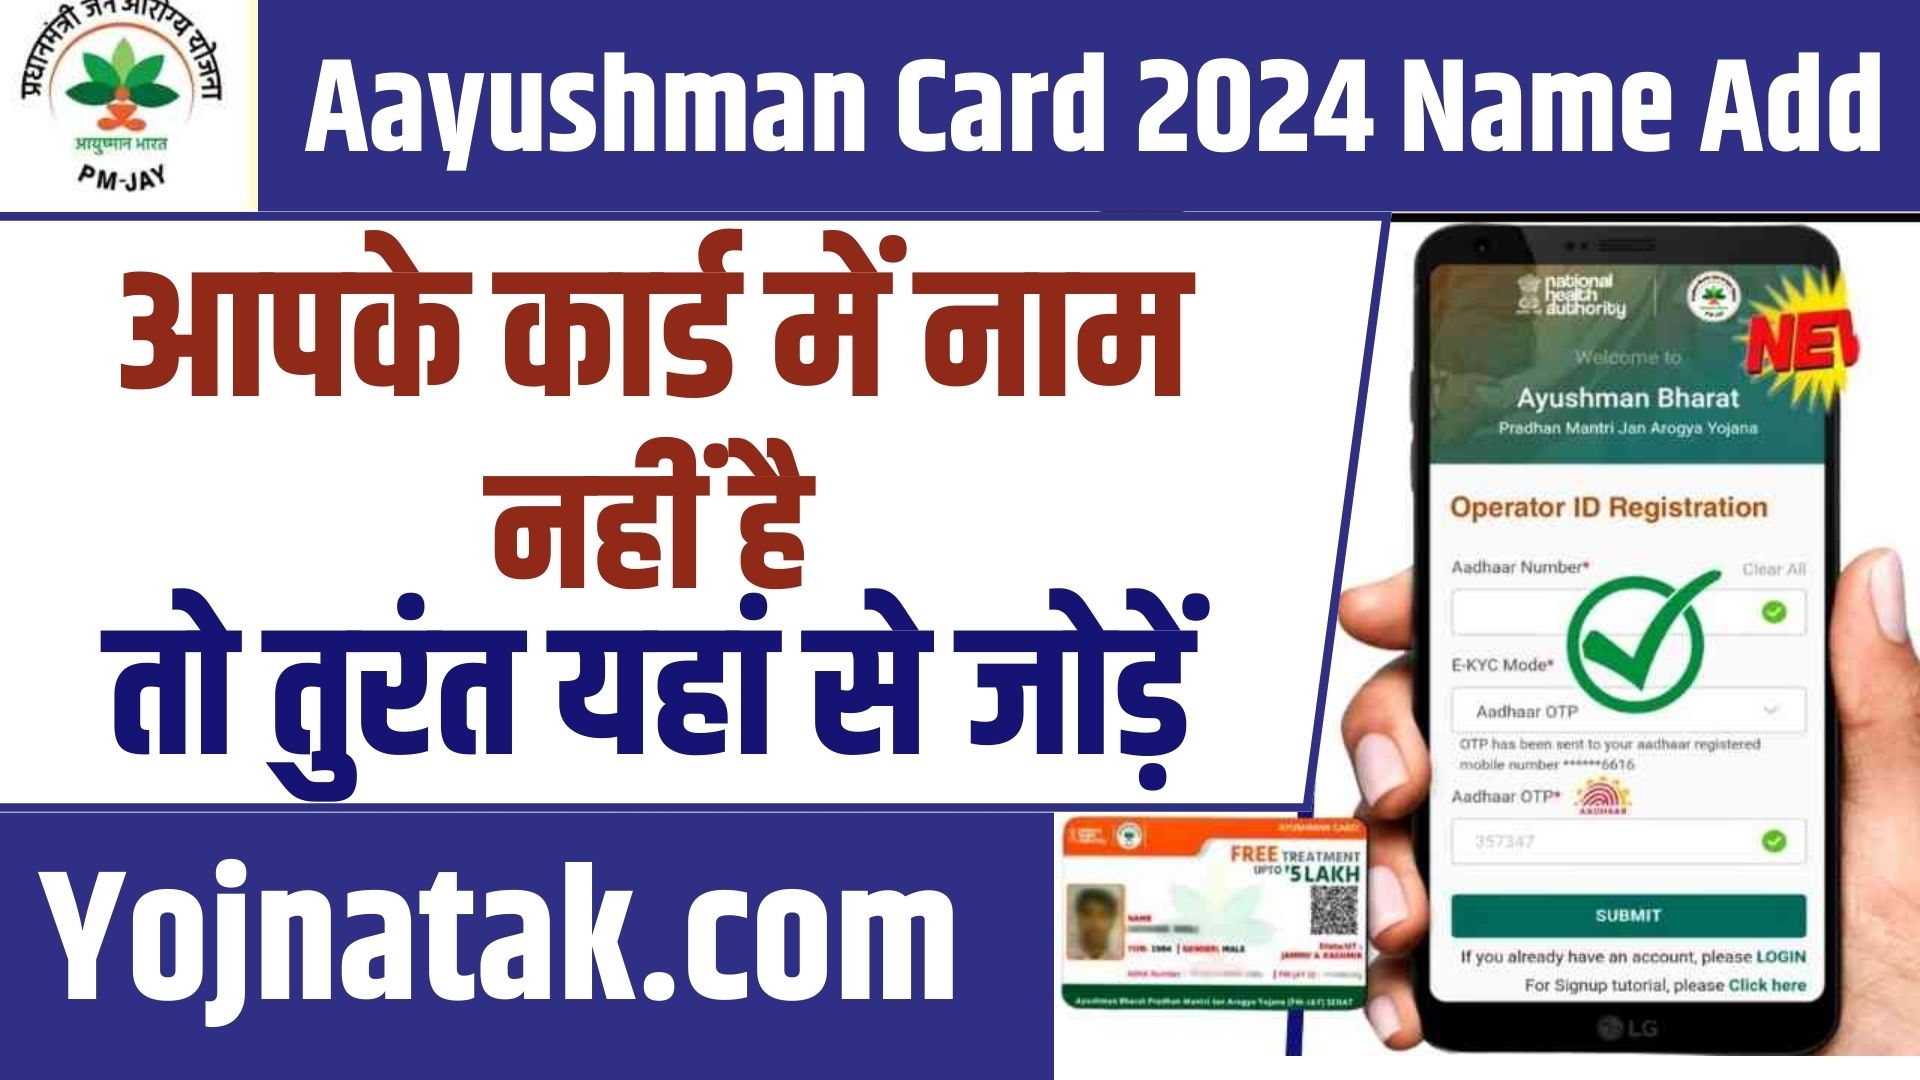 Aayushman Card 2024 Name Add (1)